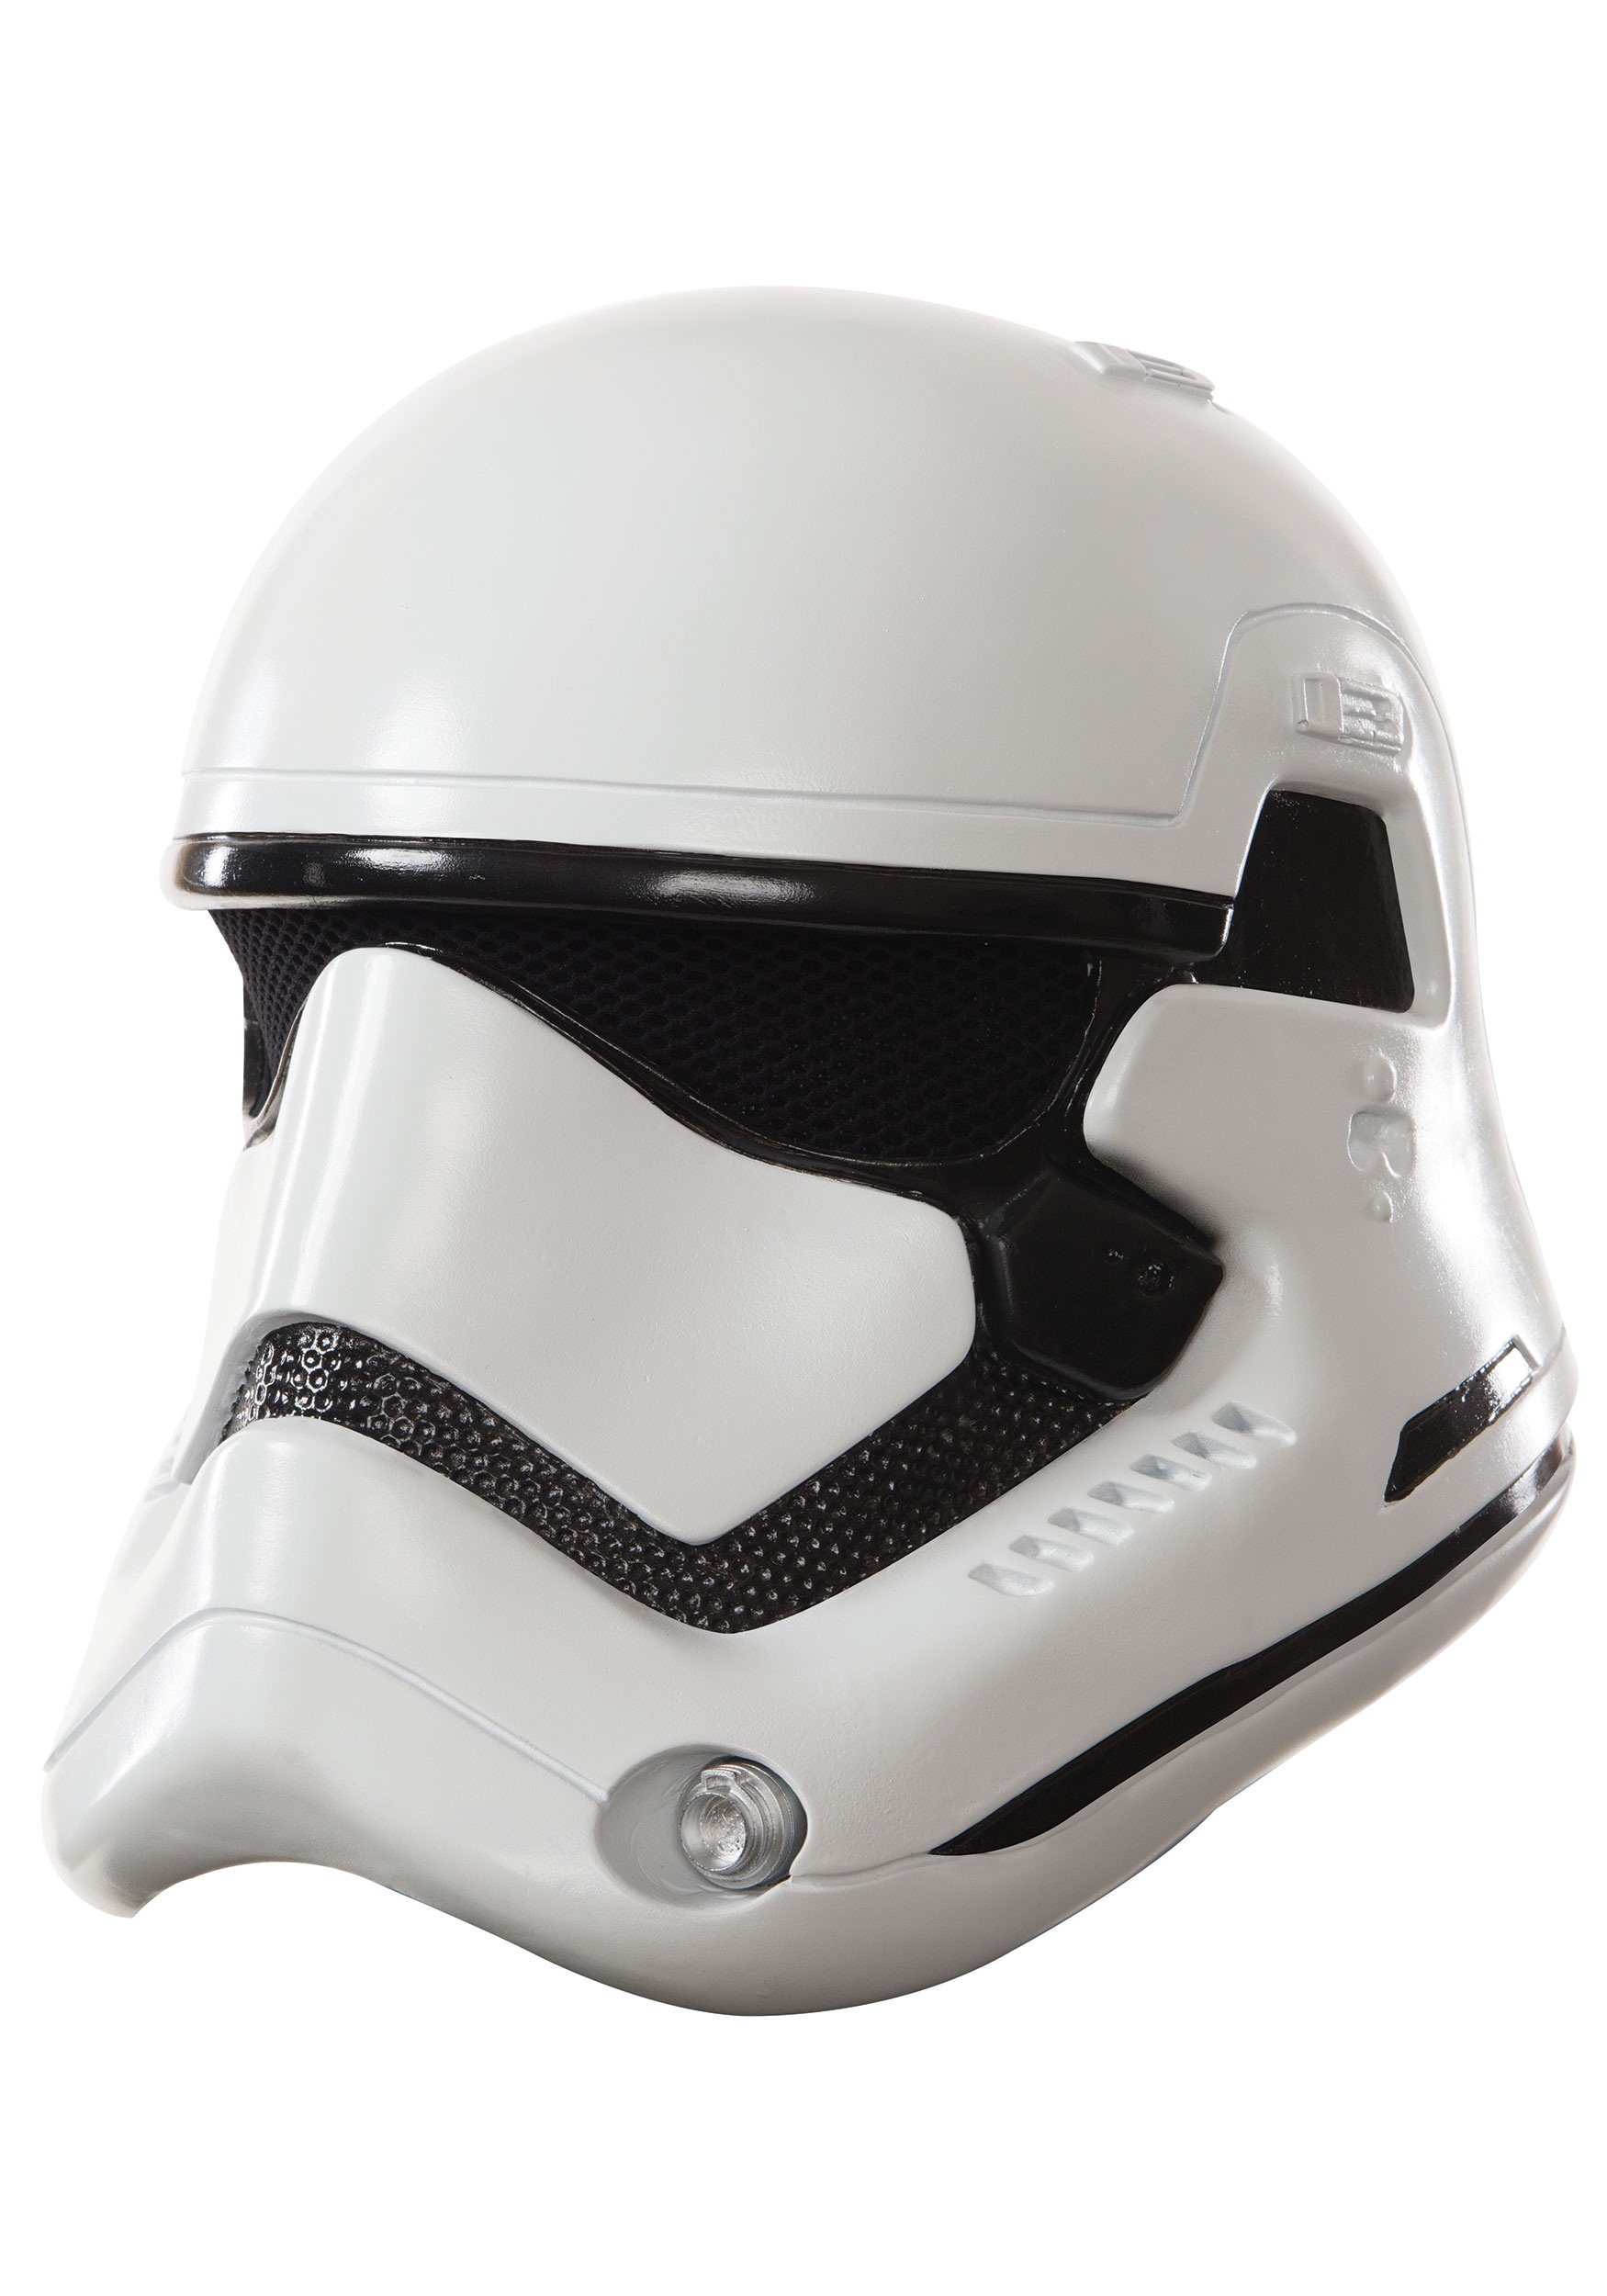 Adult Star Wars The Force Awakens Deluxe Stormtrooper Helmet Multicolor